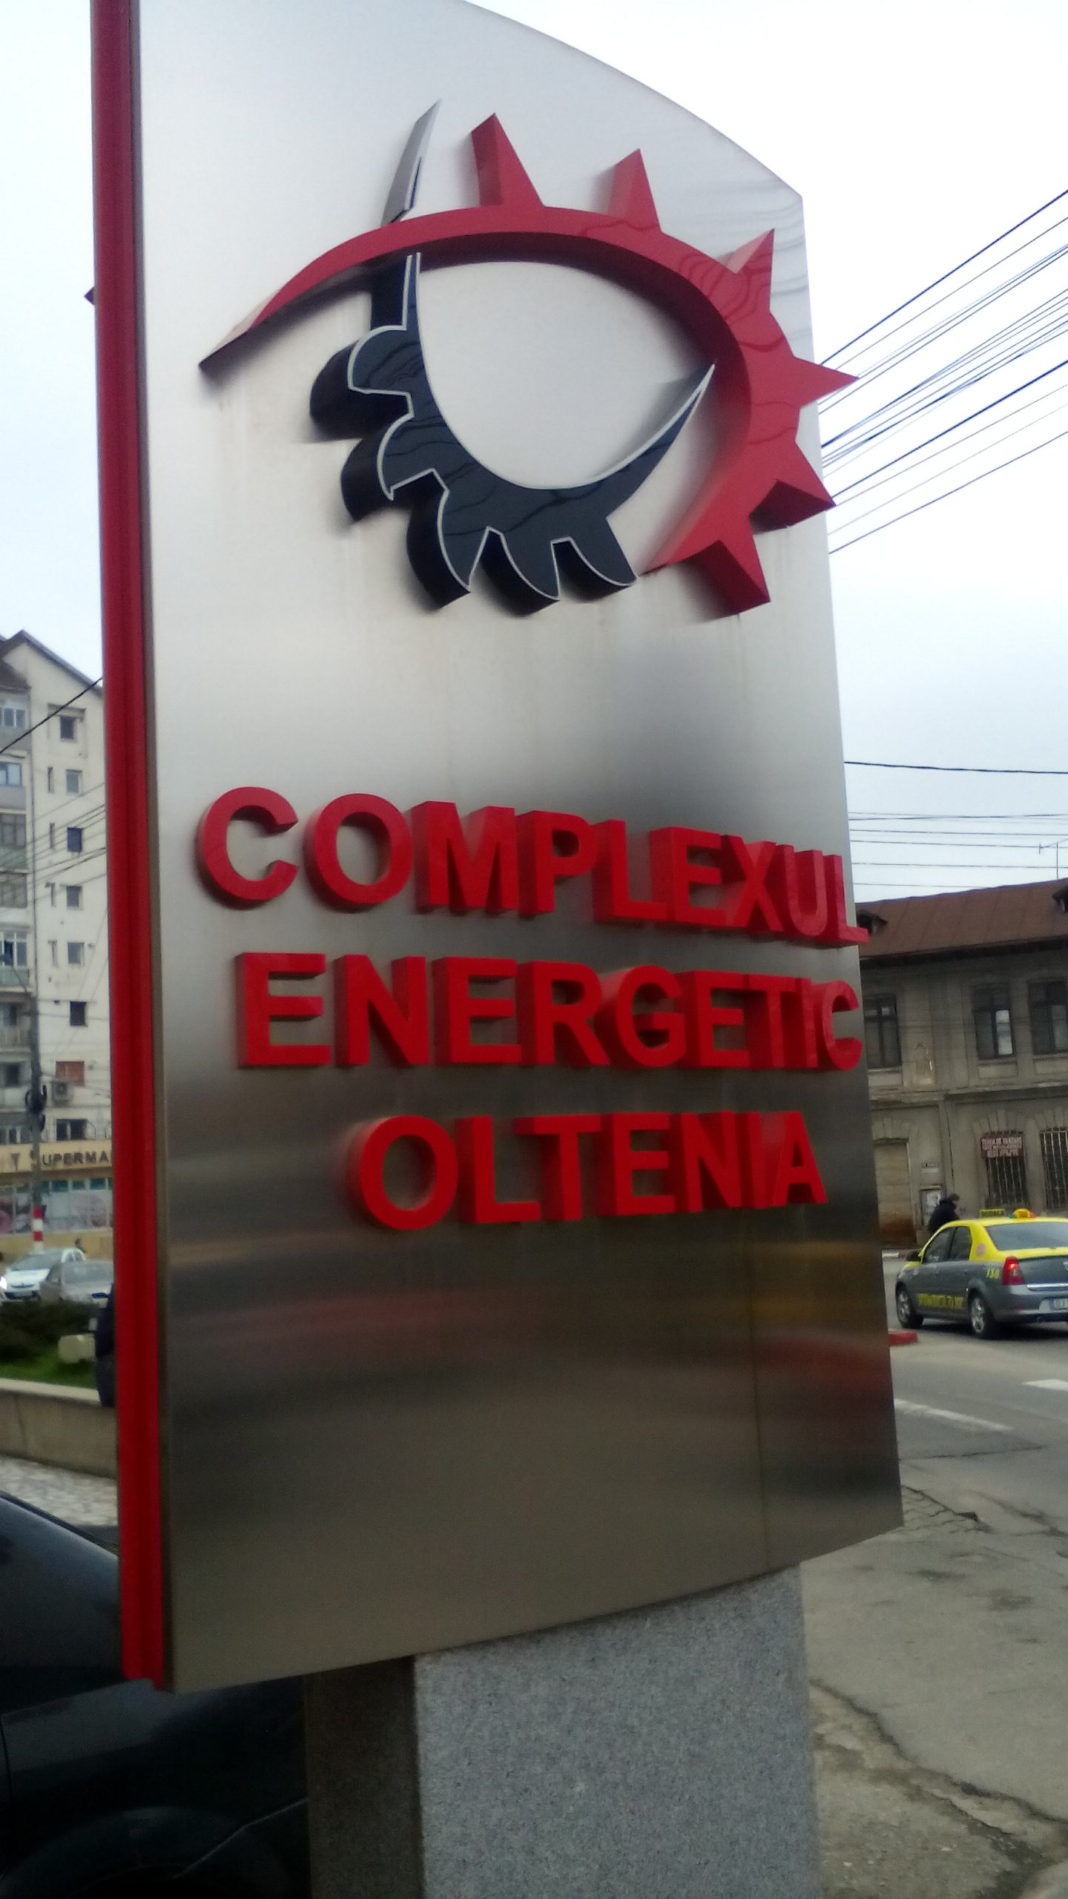 Complexul Energetic Oltenia produce curent electrică în termocentrale pe cărbune